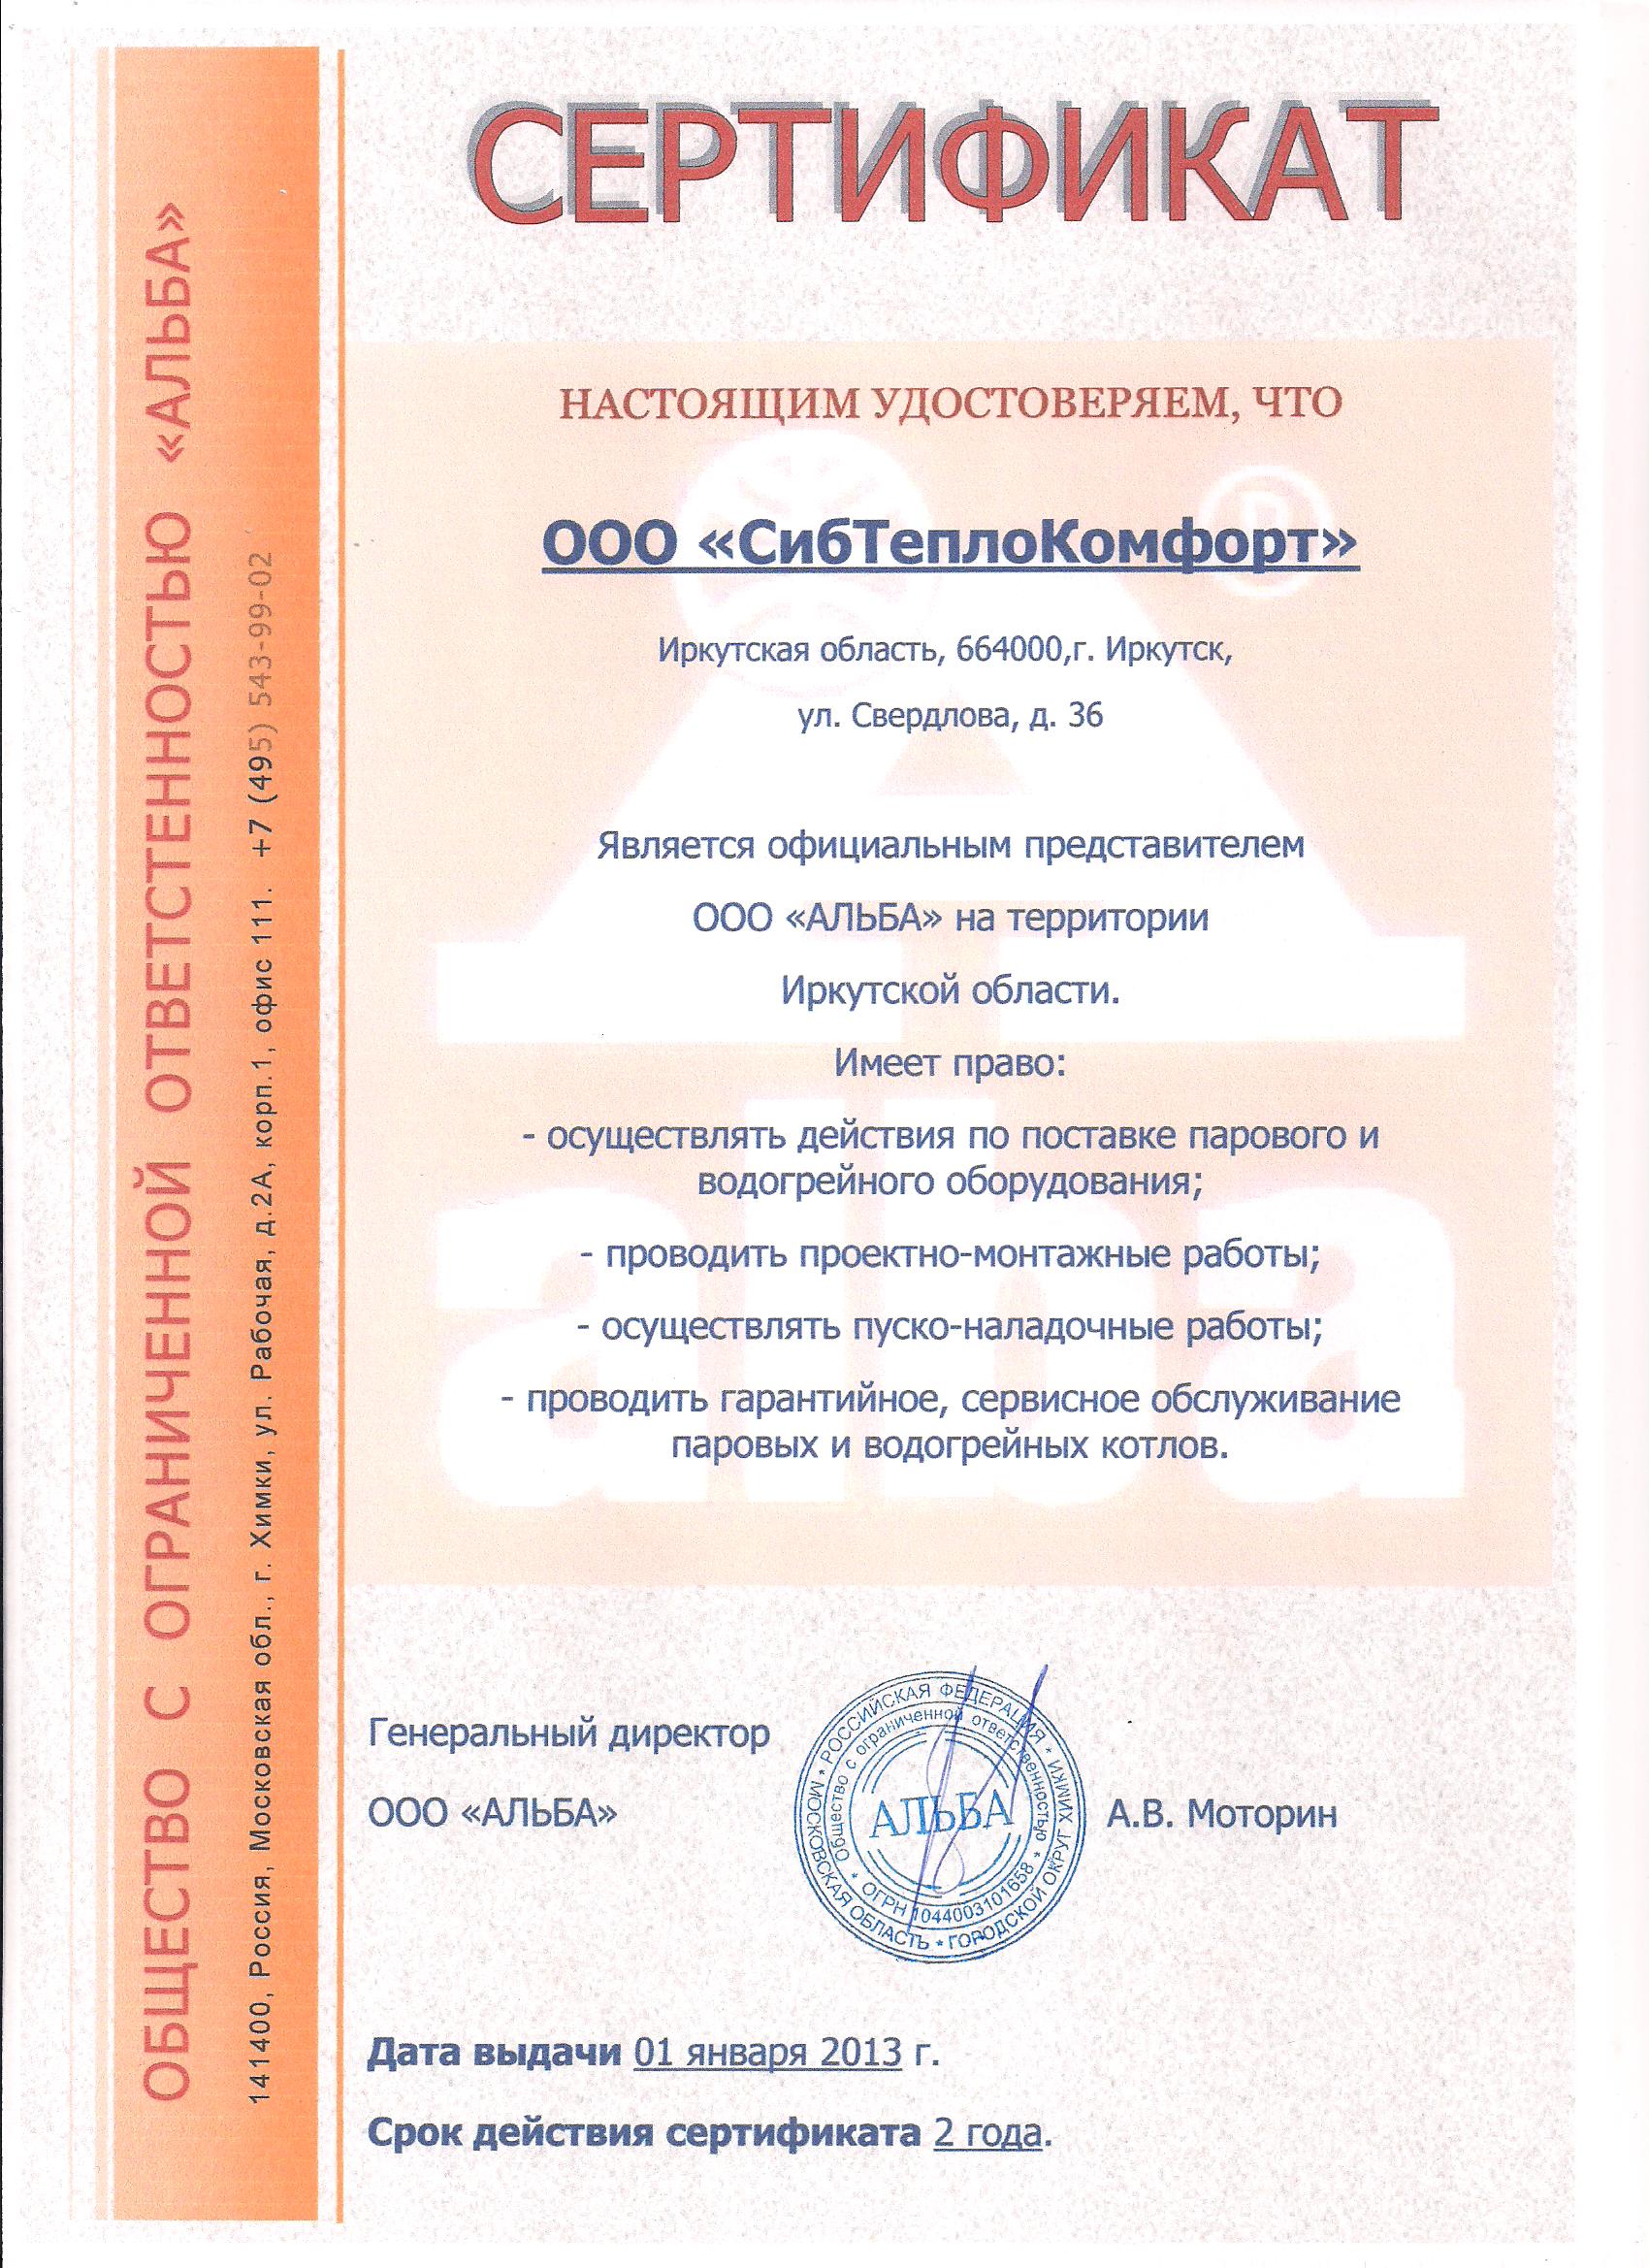 -- Сертификат (2).jpg (jpg, 571 кб.)